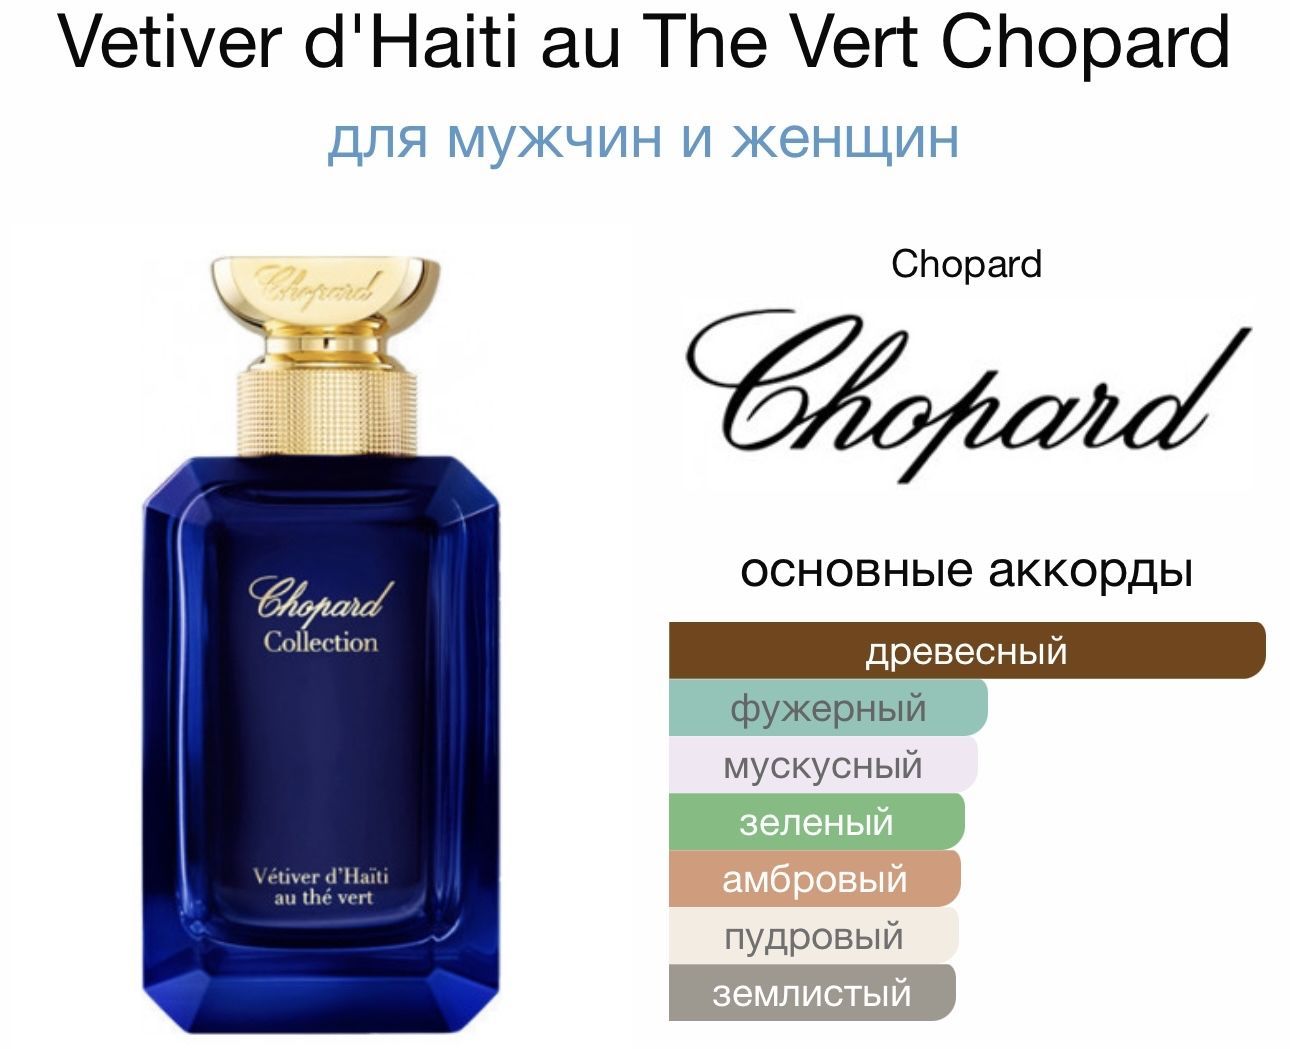 Chopard Vetiver d'Haiti au the Vert. Chopard collection Vetiver d Haiti au the Vert. Chopard Vetiver d Haiti au the Vert - фото.